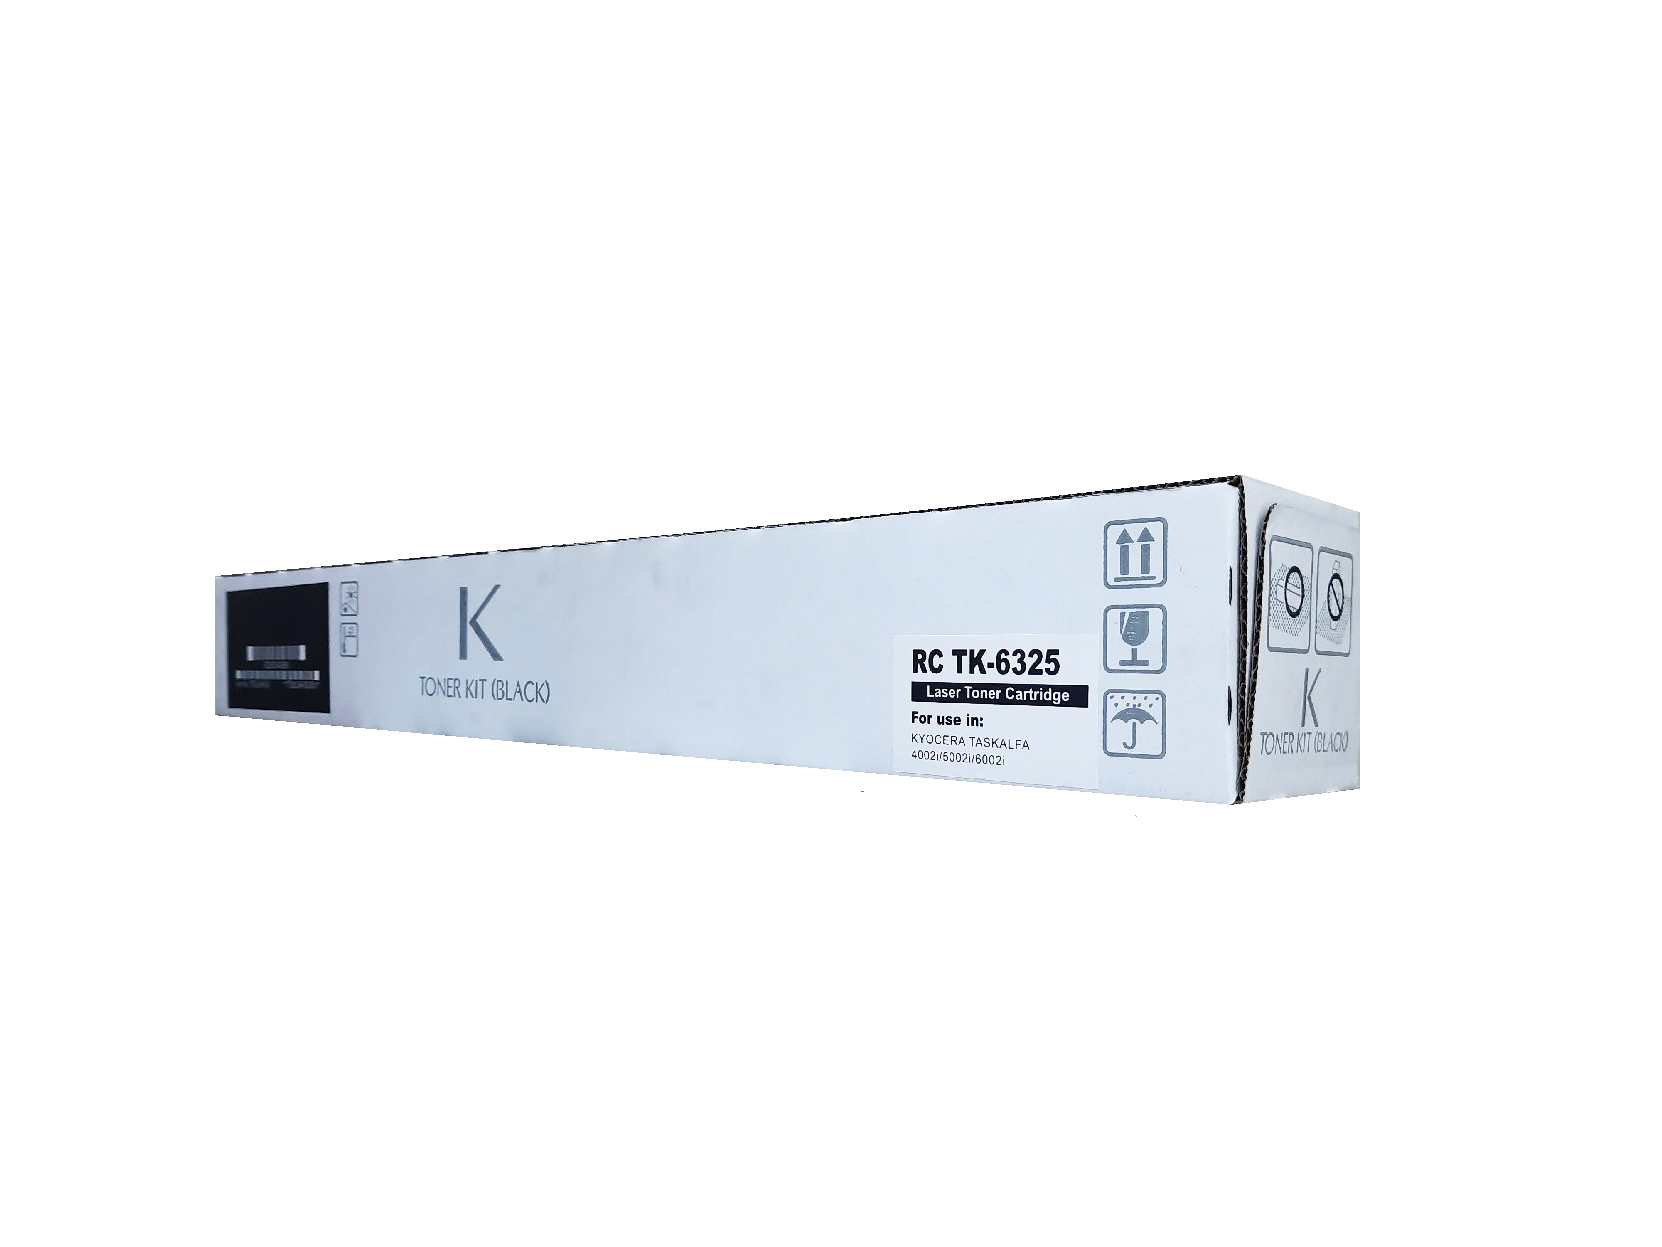 Картридж RC TK-6325 для Kyocera TASKalfa 4002i/5002i/6002i (35000стр.)